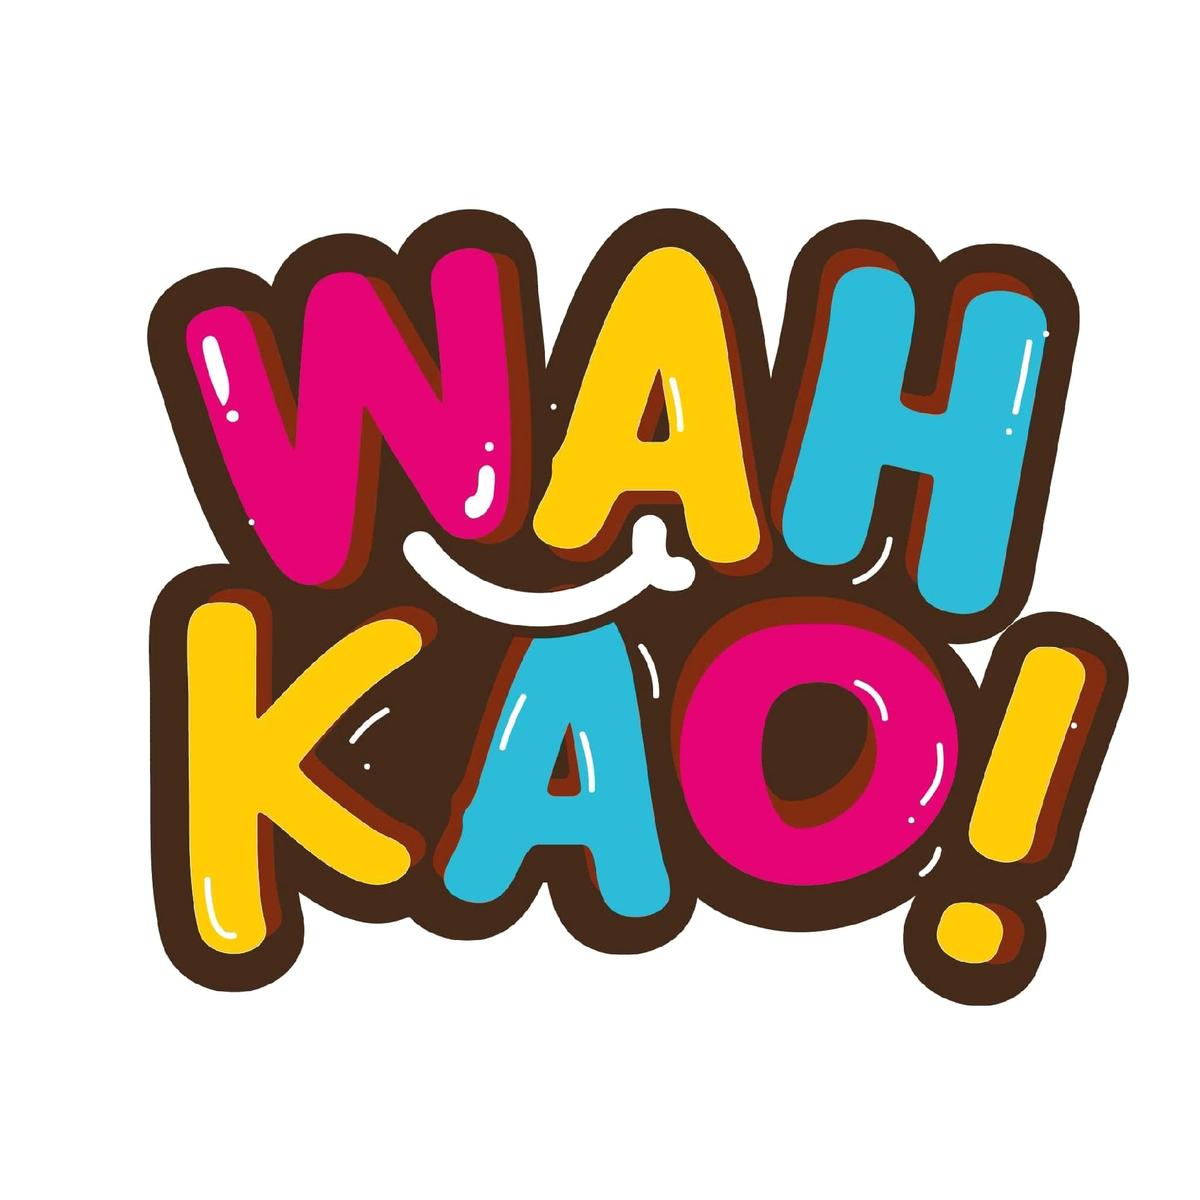 Wah Kao's images